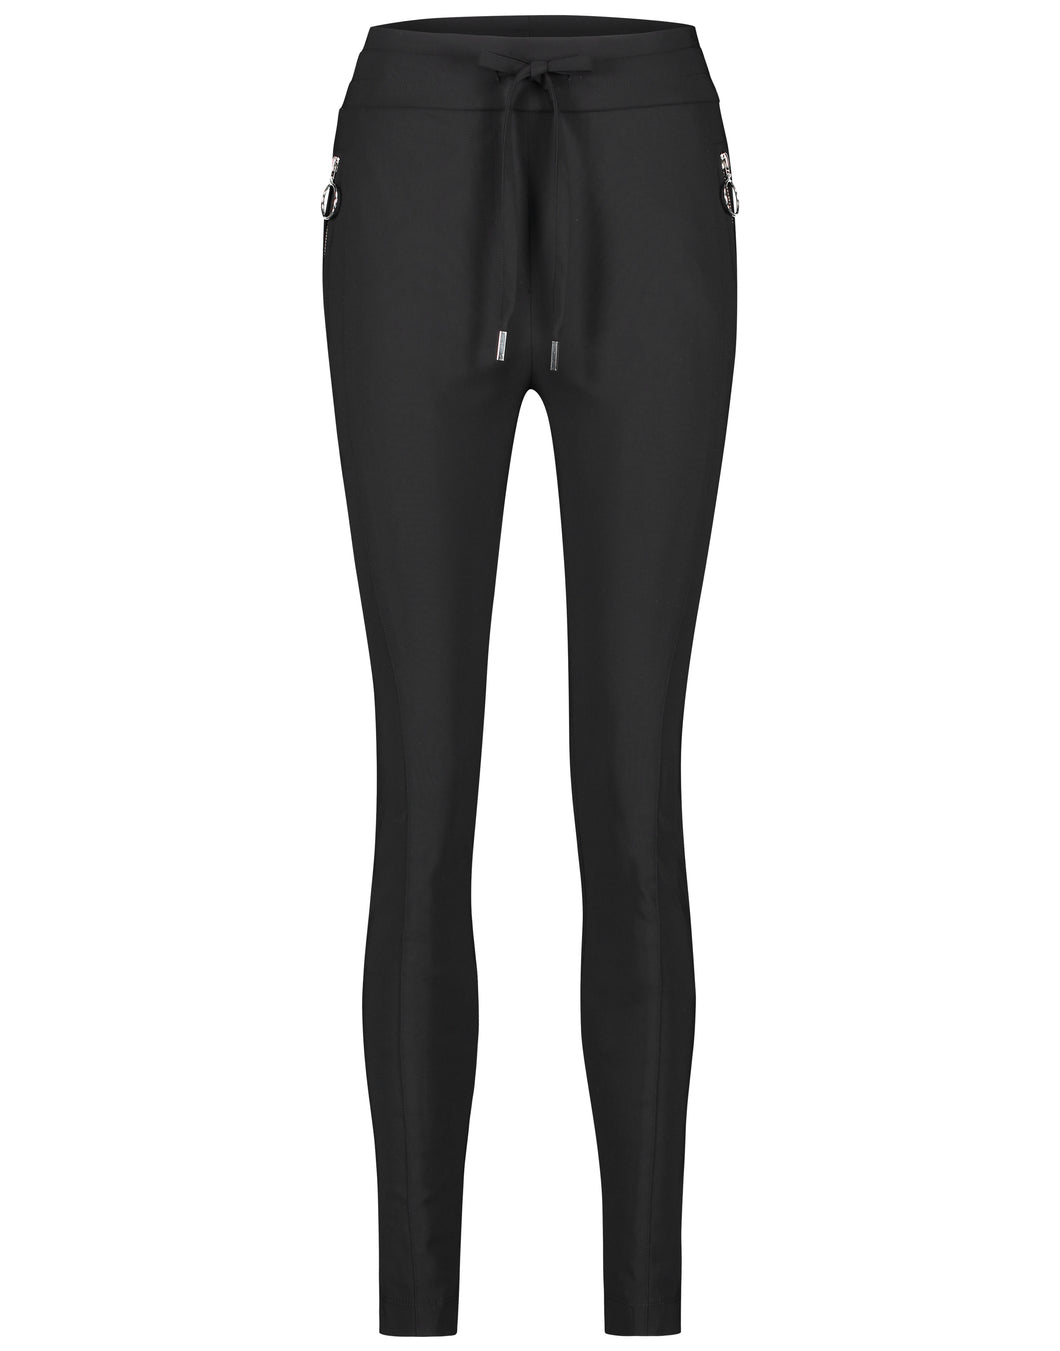 De broek Anna Skinny Fit Black BB230UZ heeft een smalle pijp, een tailleband met trekkoord, zakken met ritsen en detail. De broek is uitgevoerd in de kleur zwart en is van de bekende travel kwaliteit.